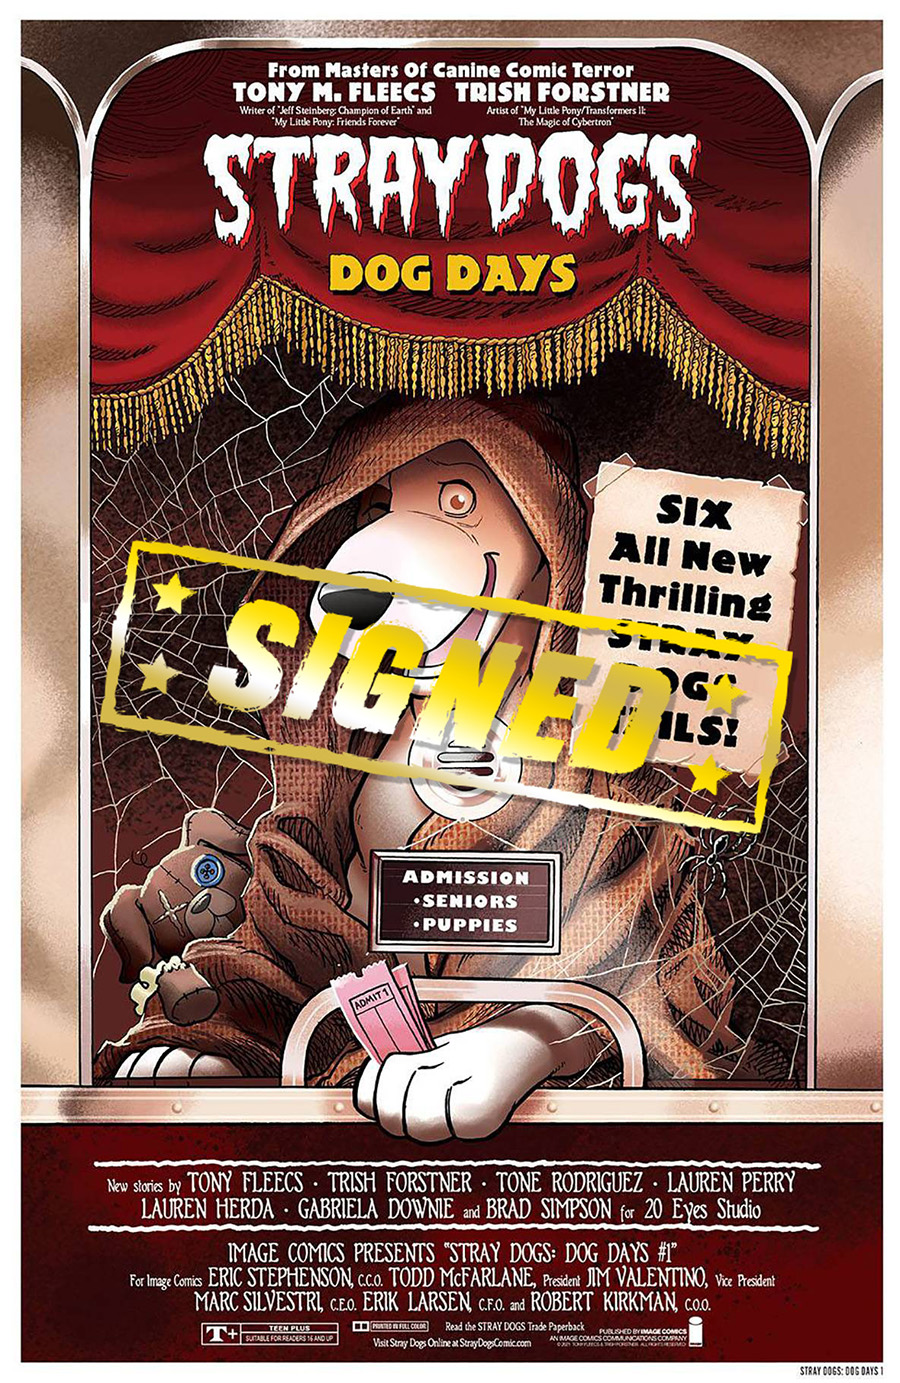 Stray Dogs Dog Days #1 Cover F DF Variant Trish Forstner & Tony Fleecs Horror Movie Cover Signed By Tony Fleecs